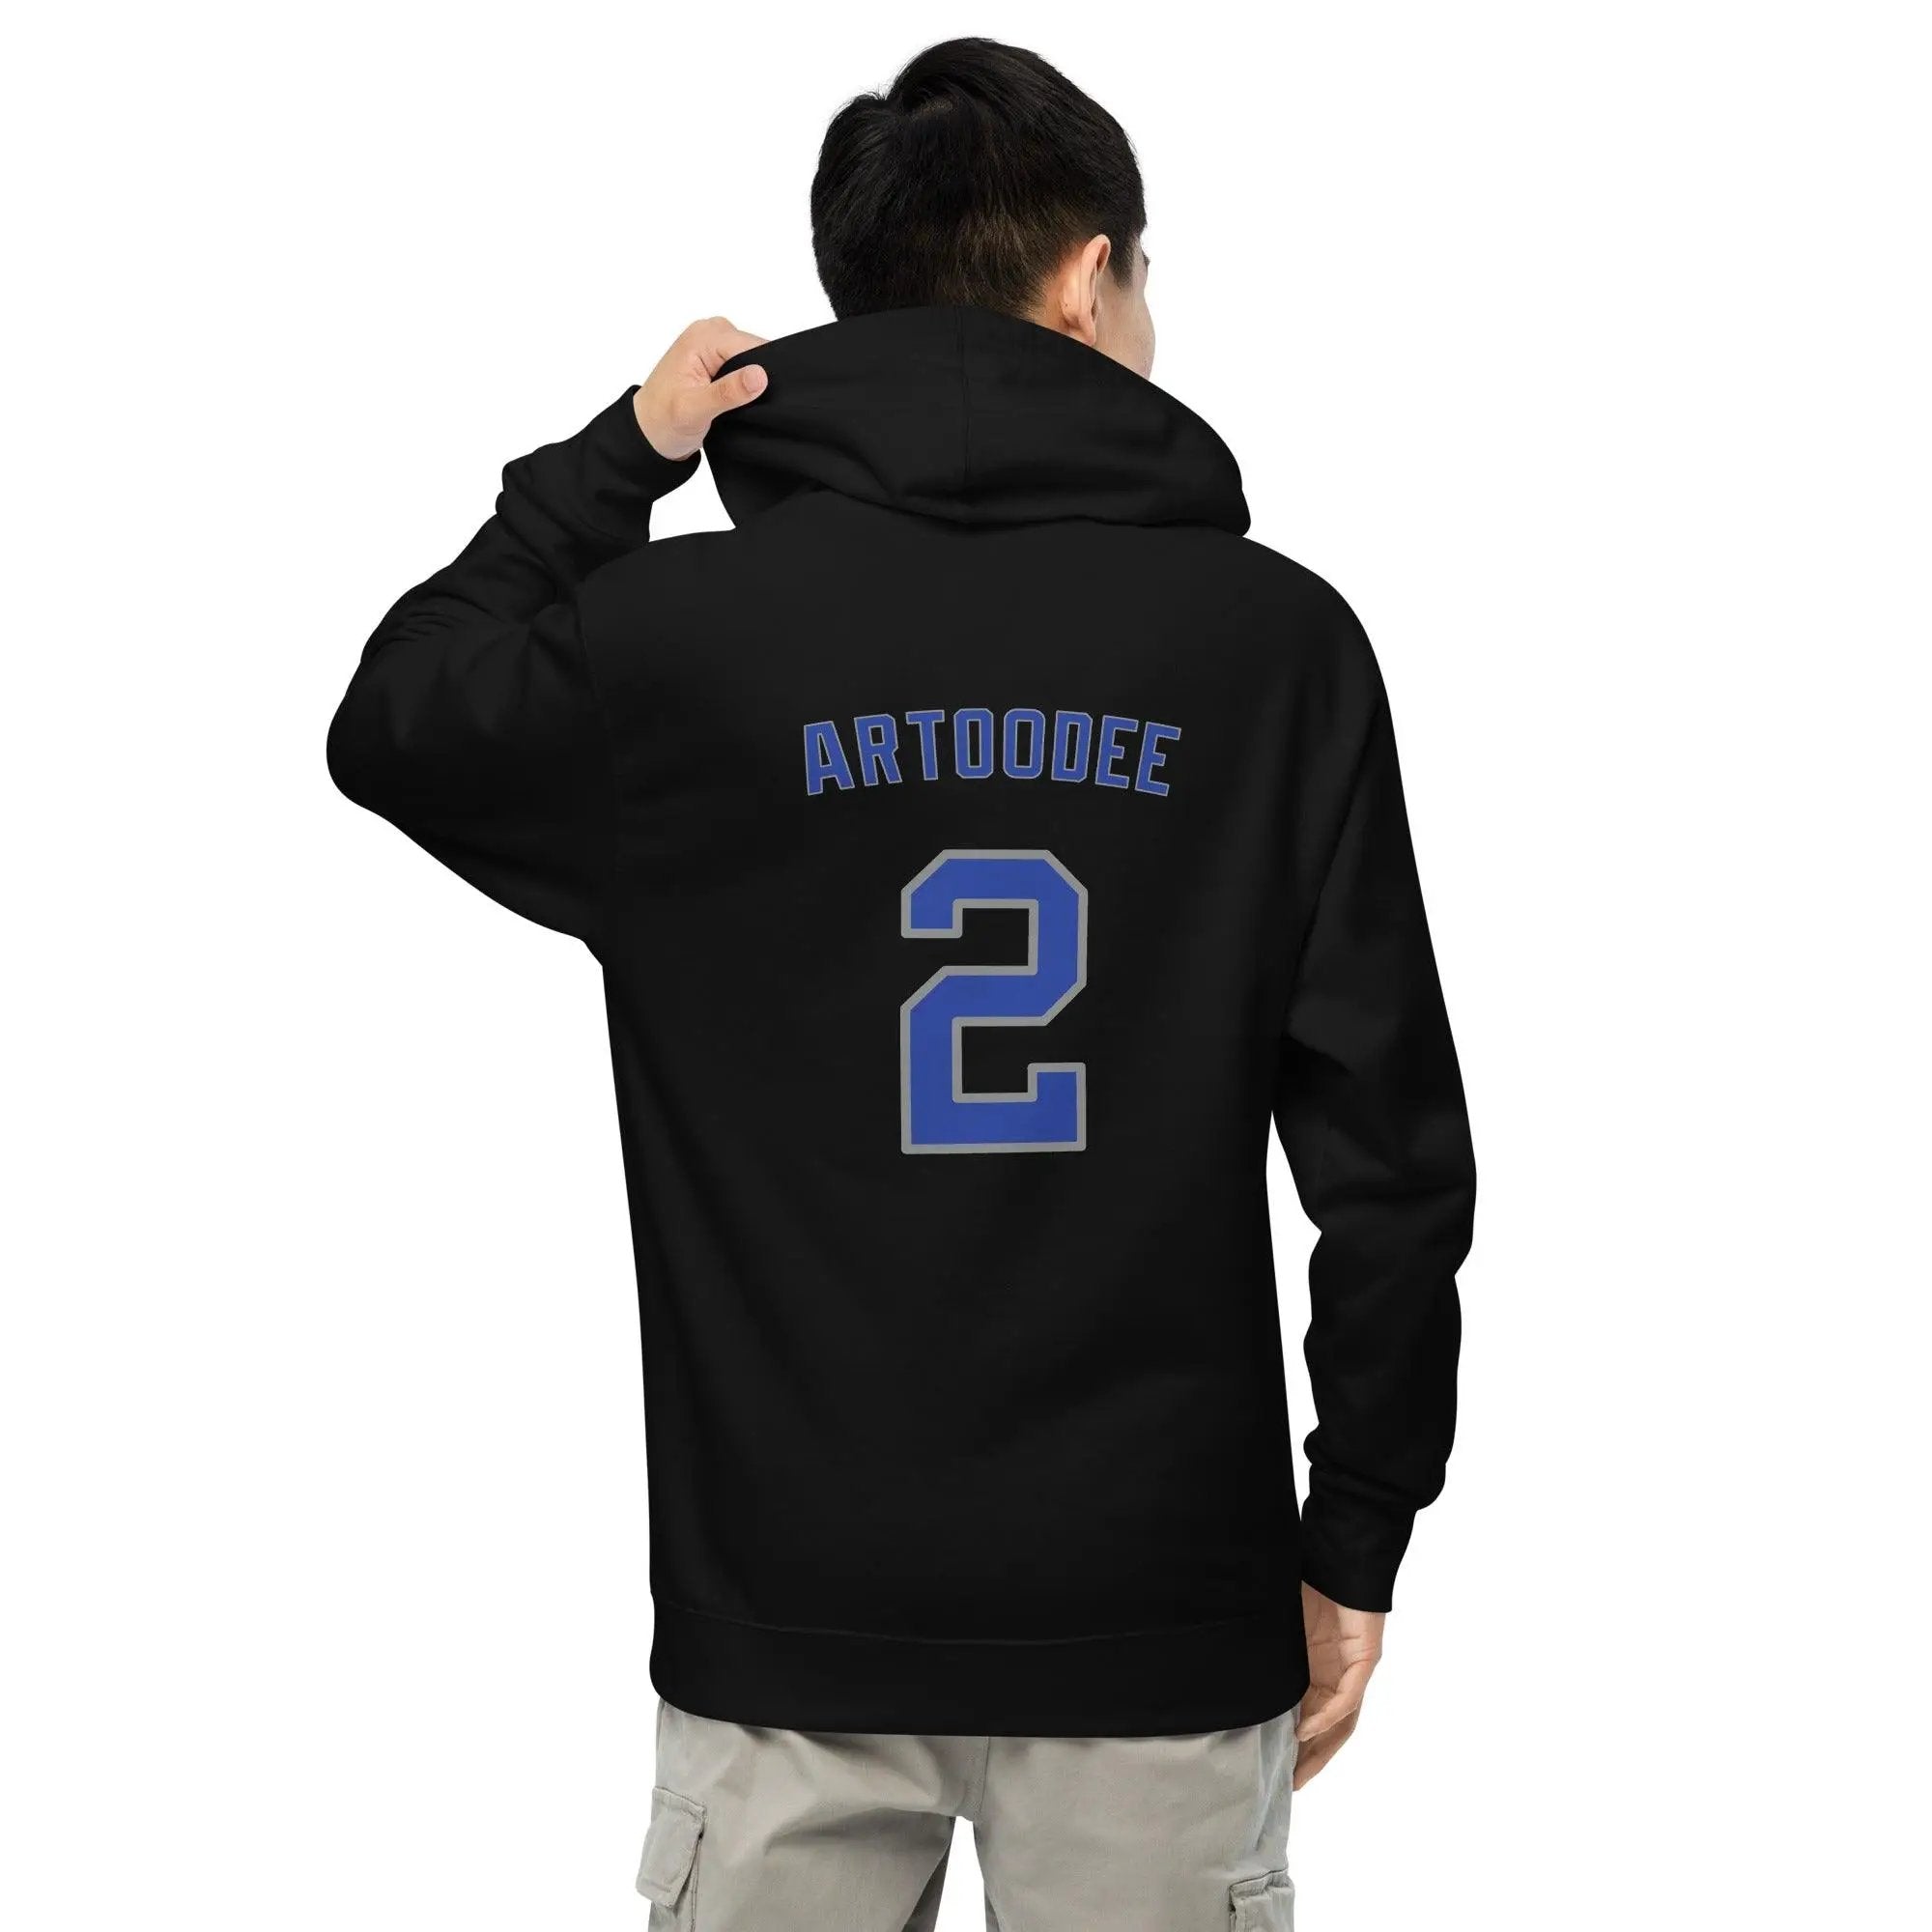 Artoodee #2 Unisex midweight hoodie